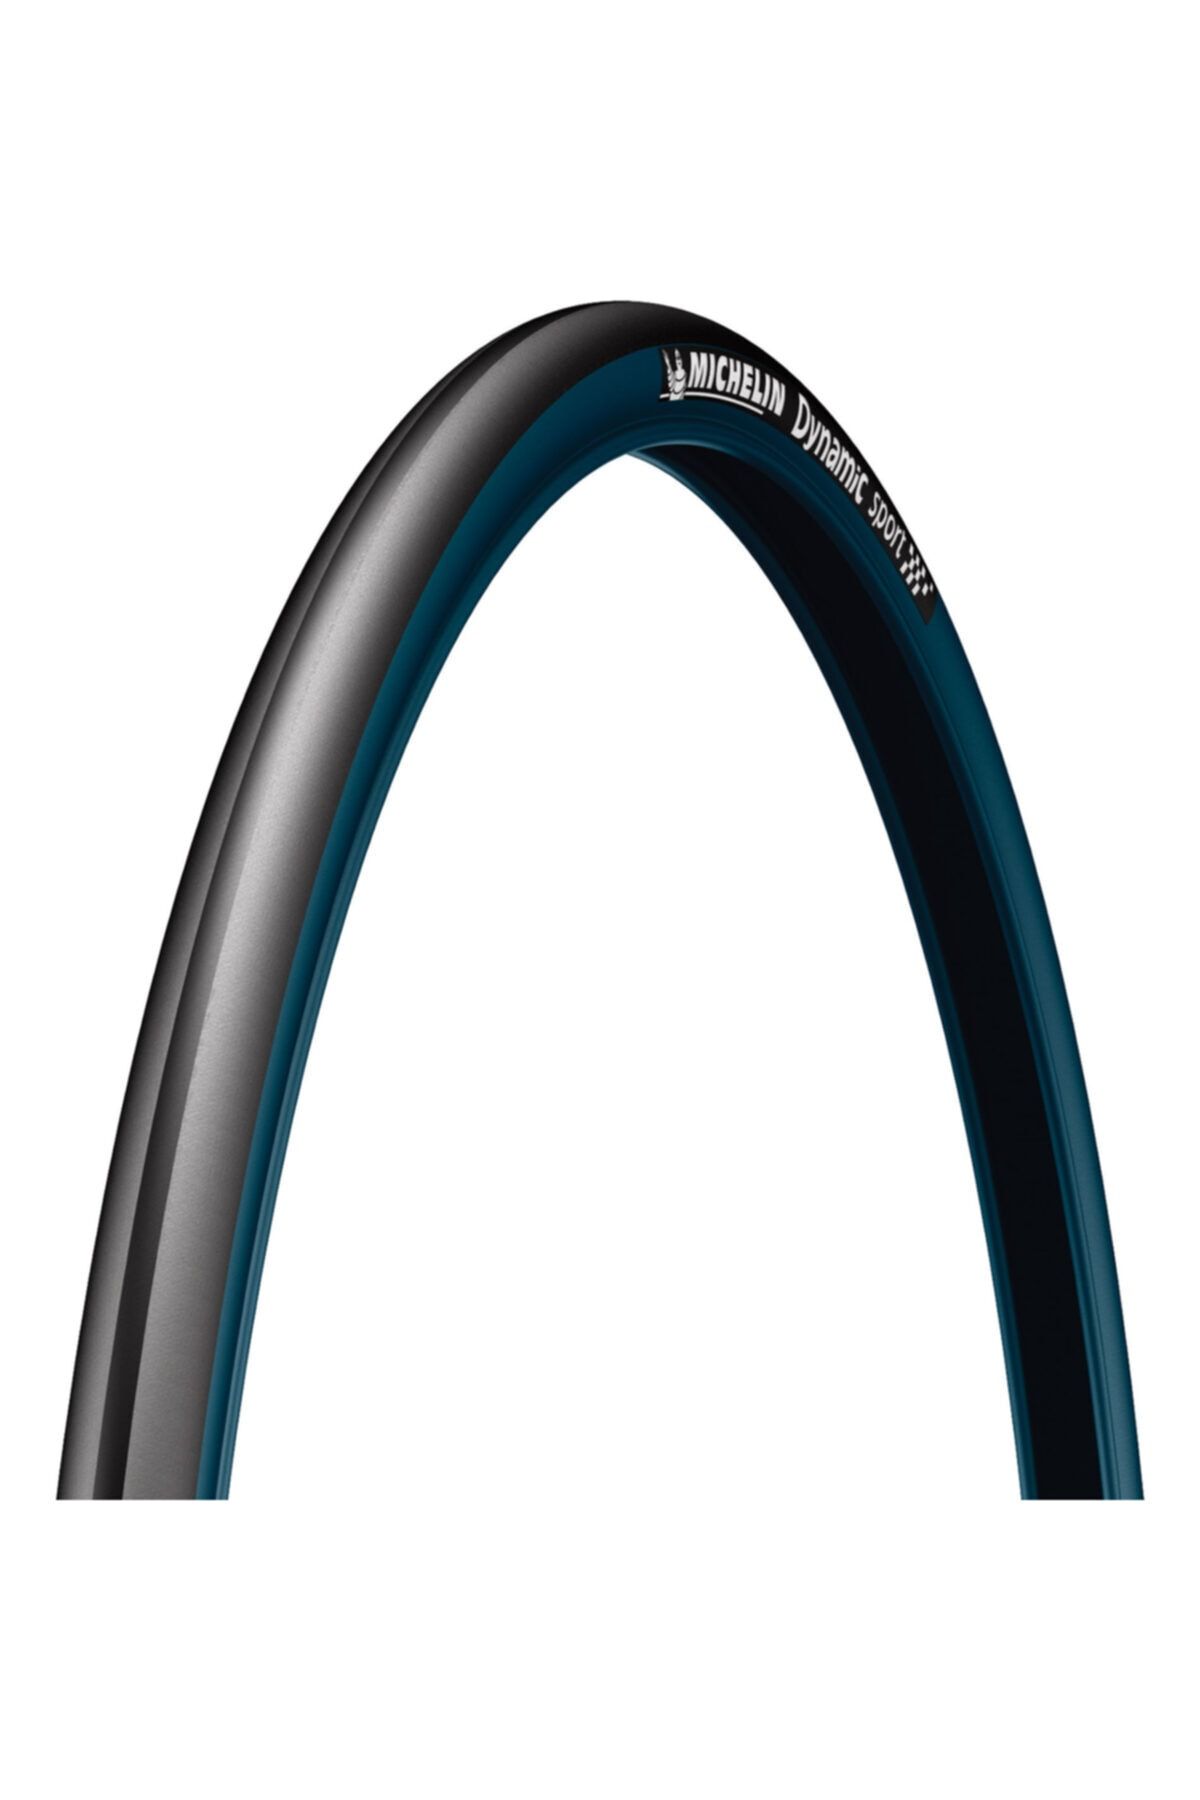 Michelin 700*23 Dynamıc Sport Yol Dış Lastik - Siyah Mavi